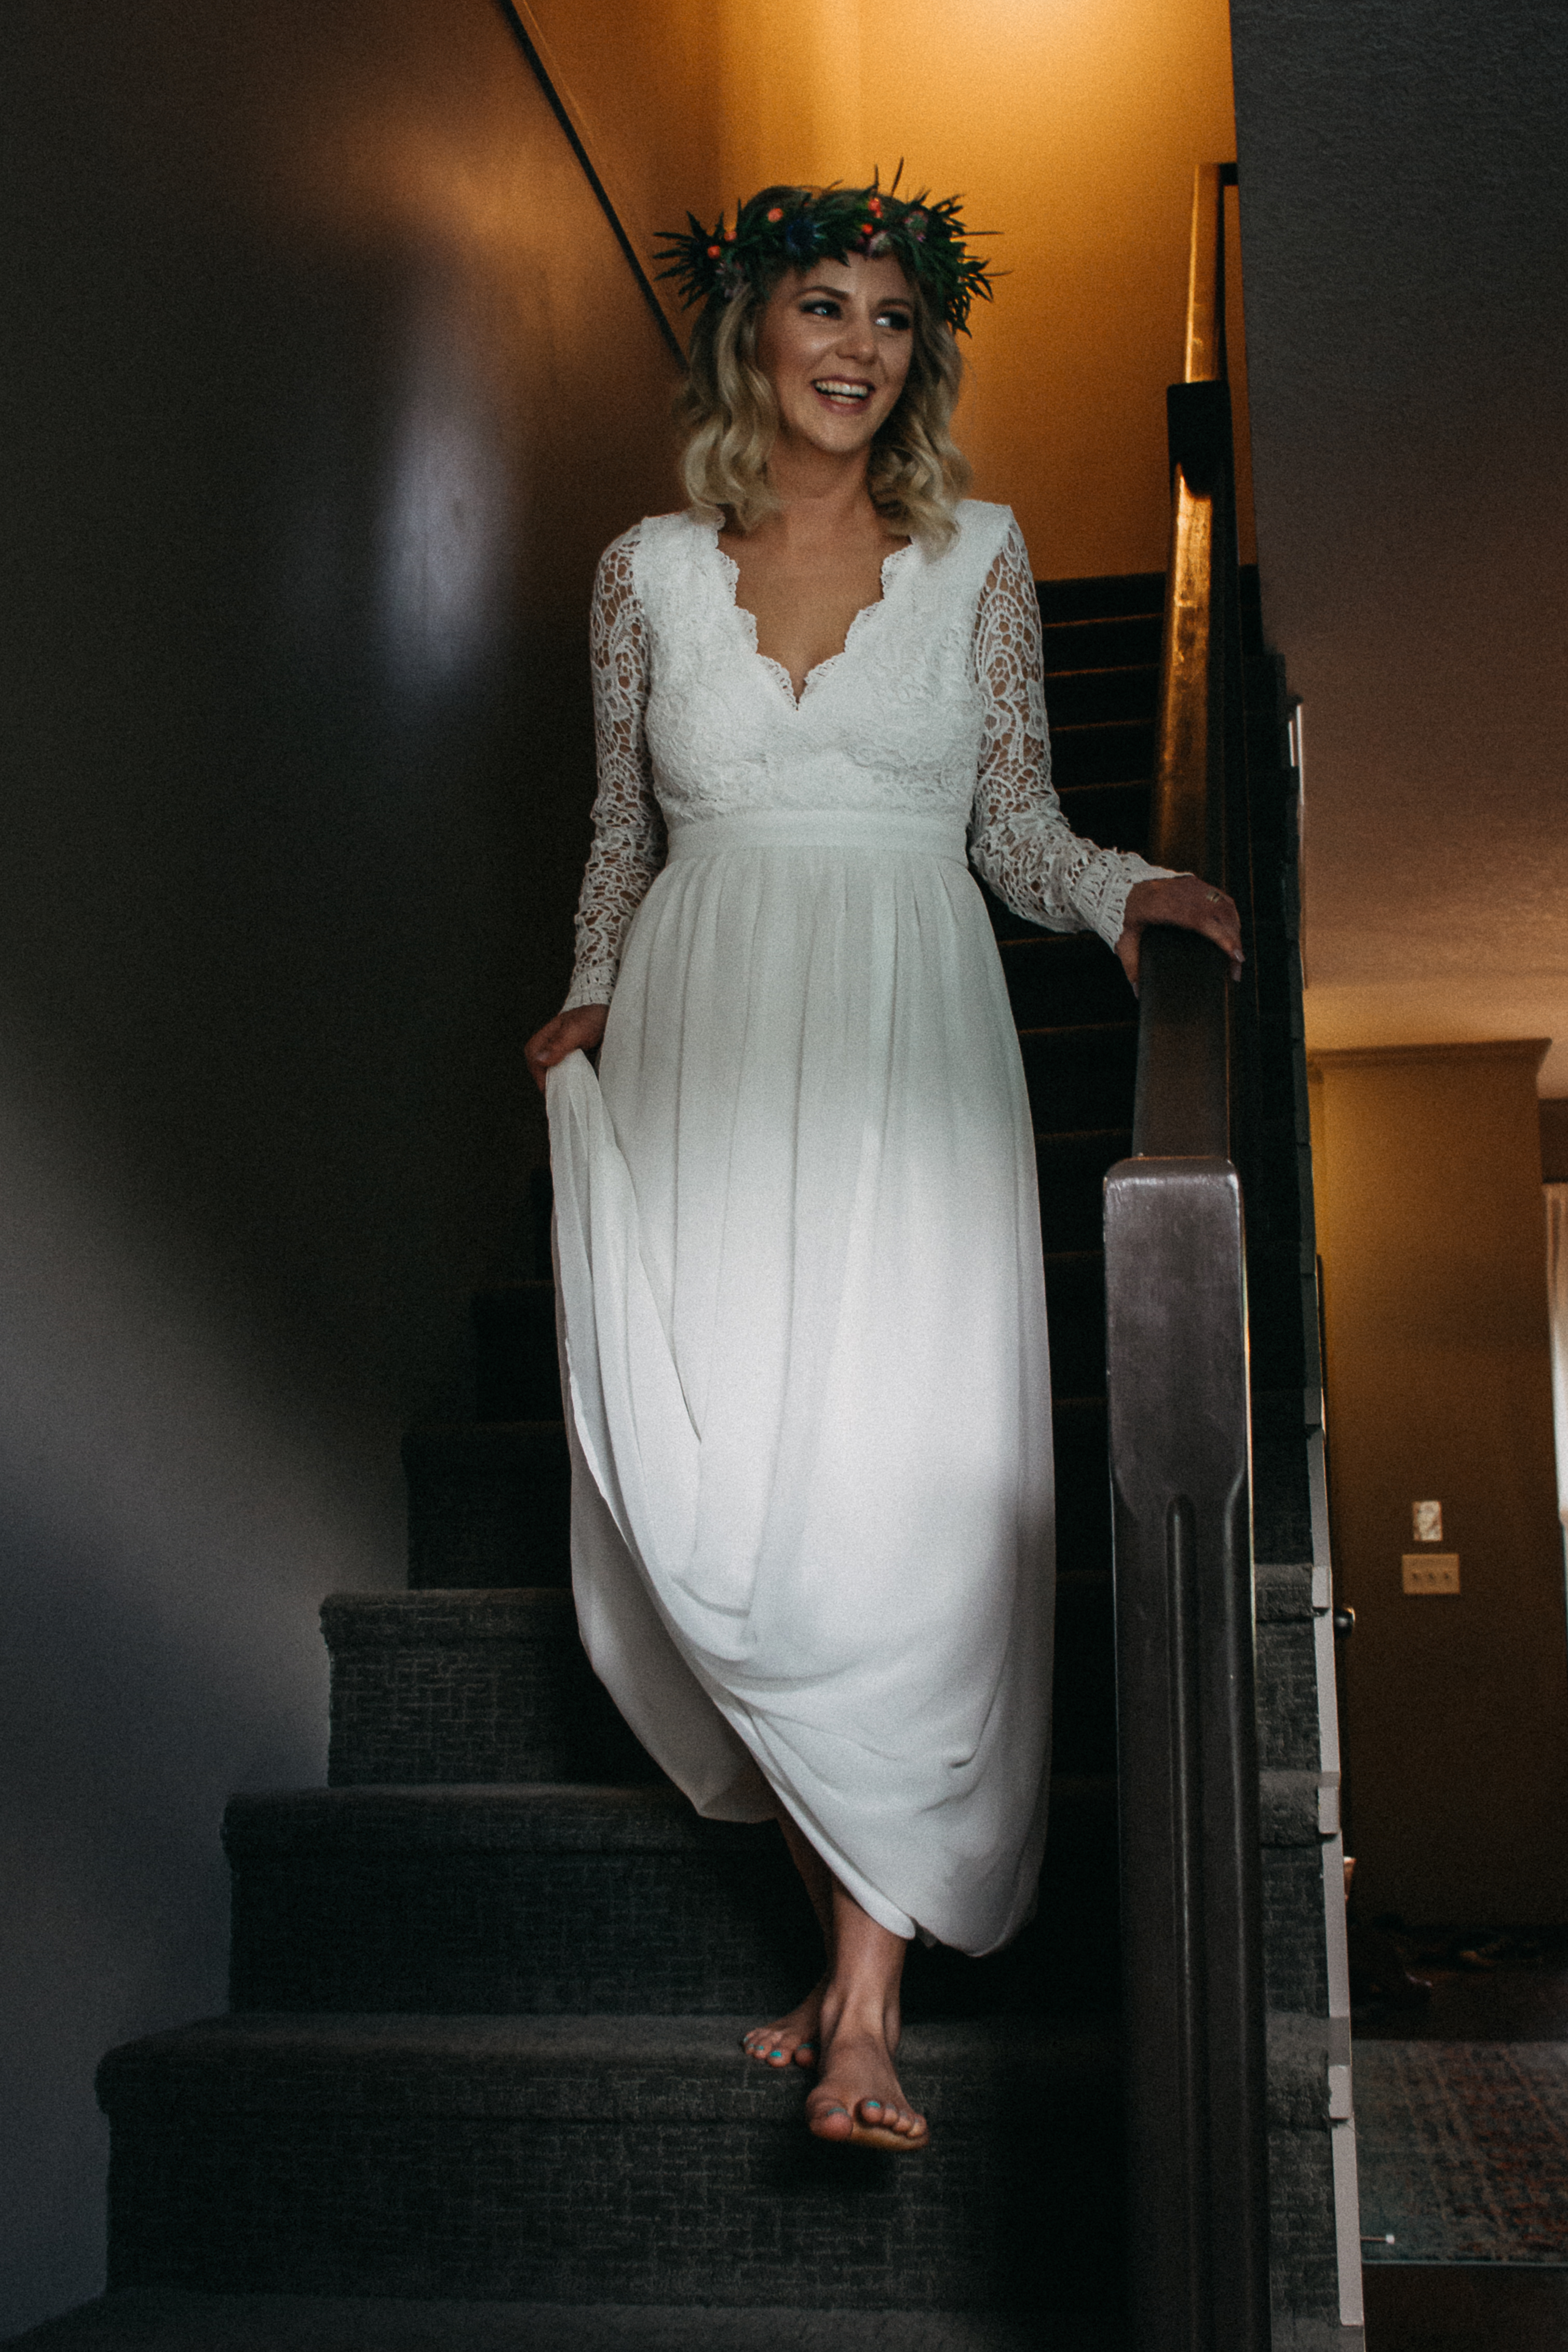 Bride walking down stairs in wedding dress